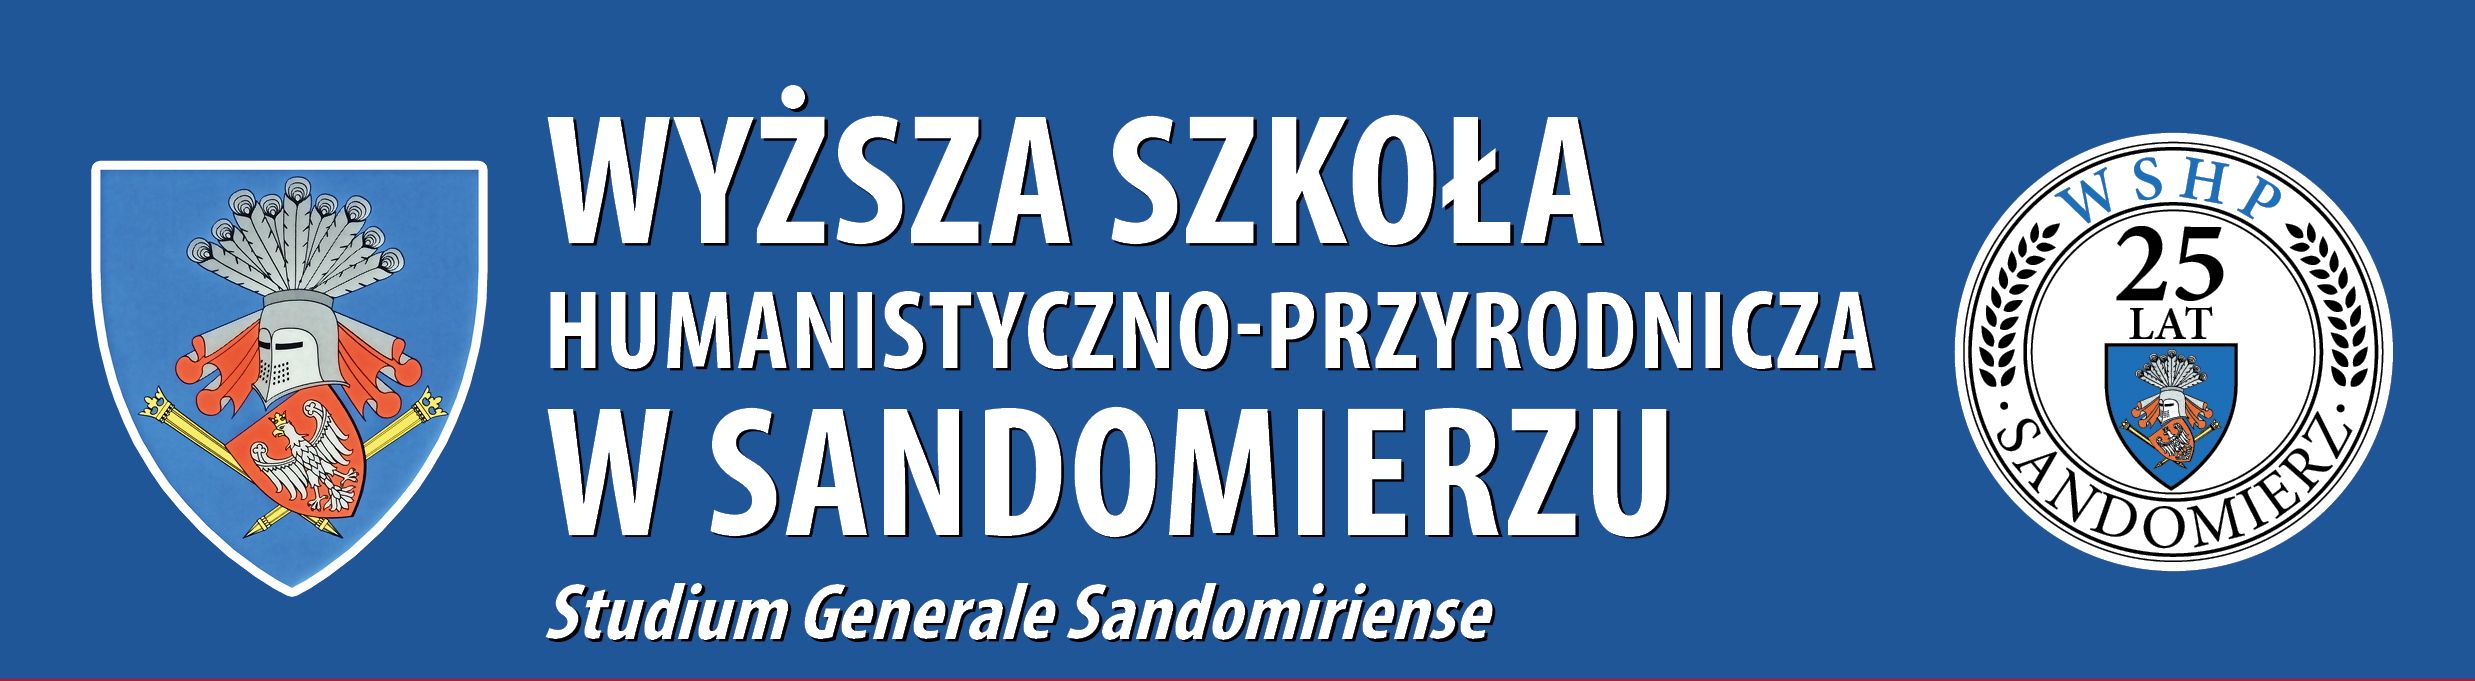 Wyższa Szkoła Humanistyczno-Przyrodnicza Studium Generale Sandomiriense w Sandomierzu